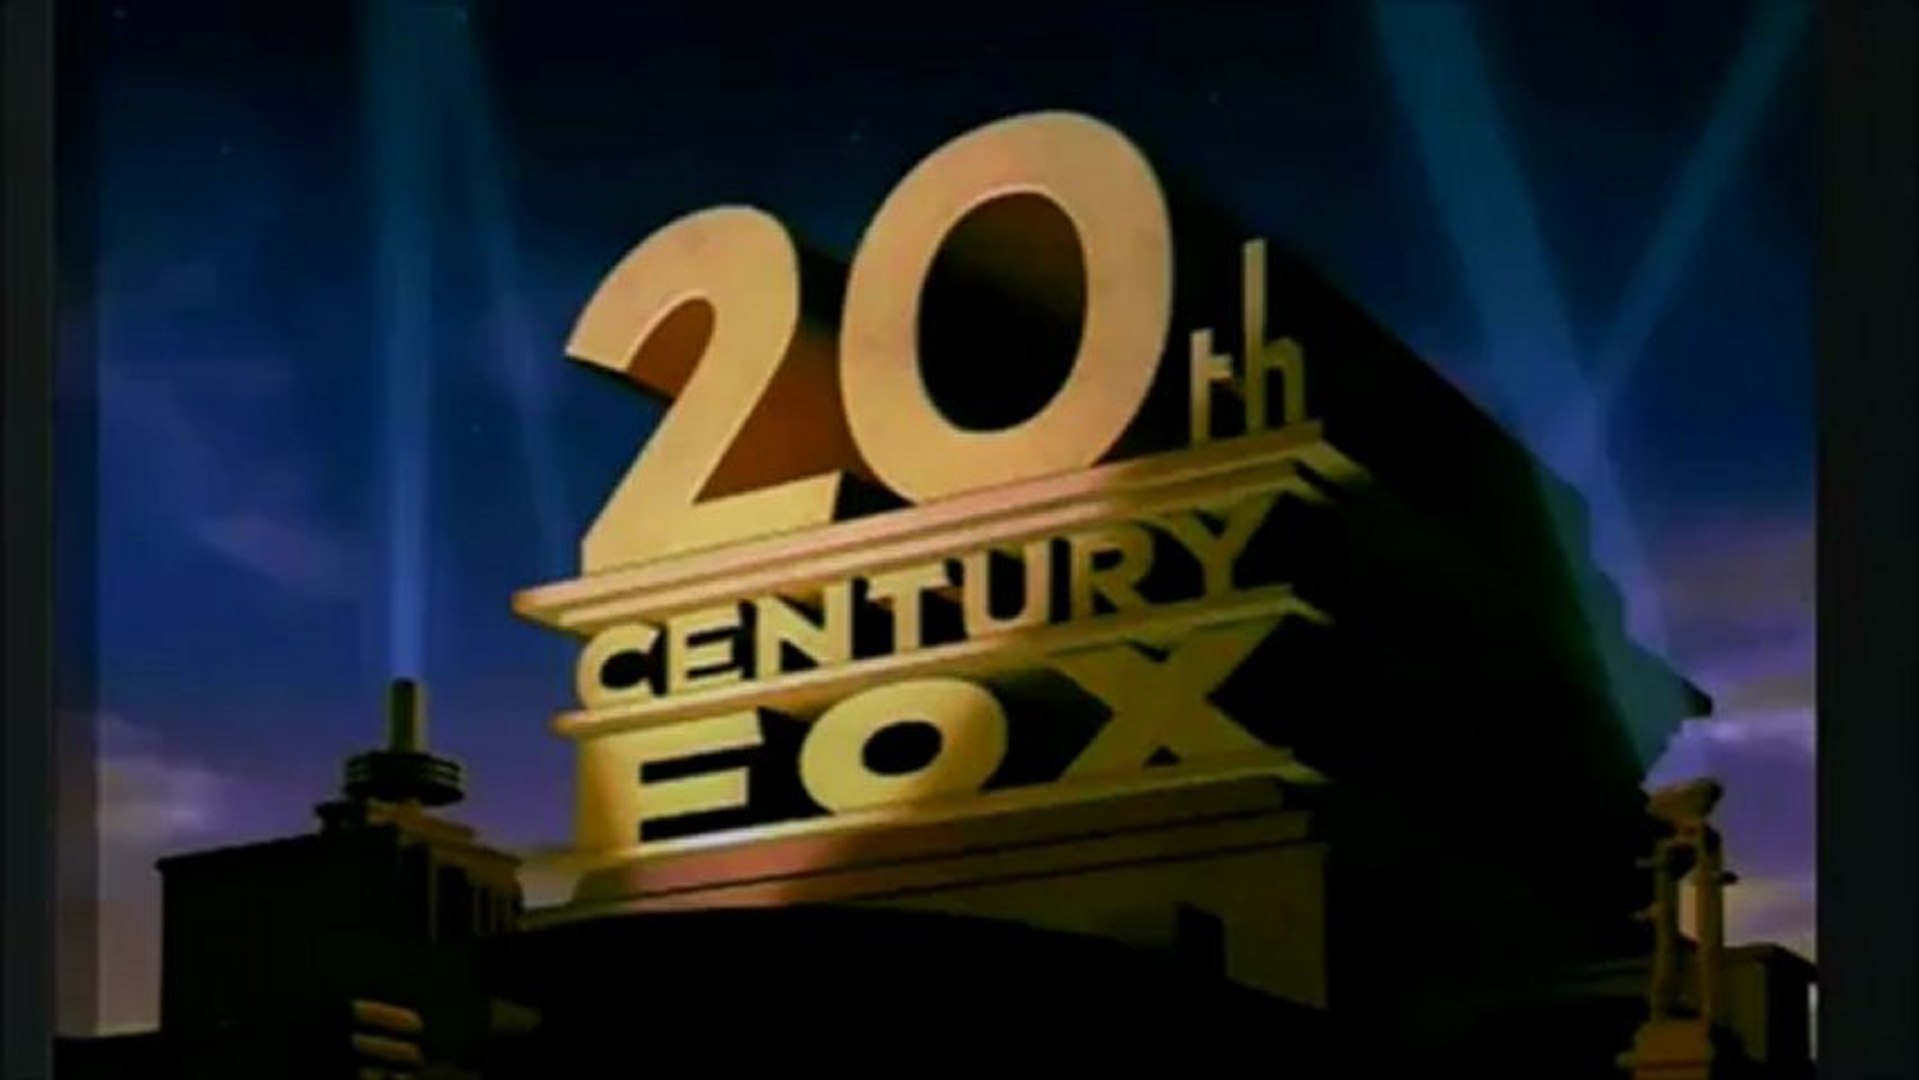 Fox home entertainment. VHS 20th Century Fox Case. 20 Век Фокс Home Entertainment. 20 Век Фокс и Дримворкс. 20th Century Fox Home Entertainment 2009.